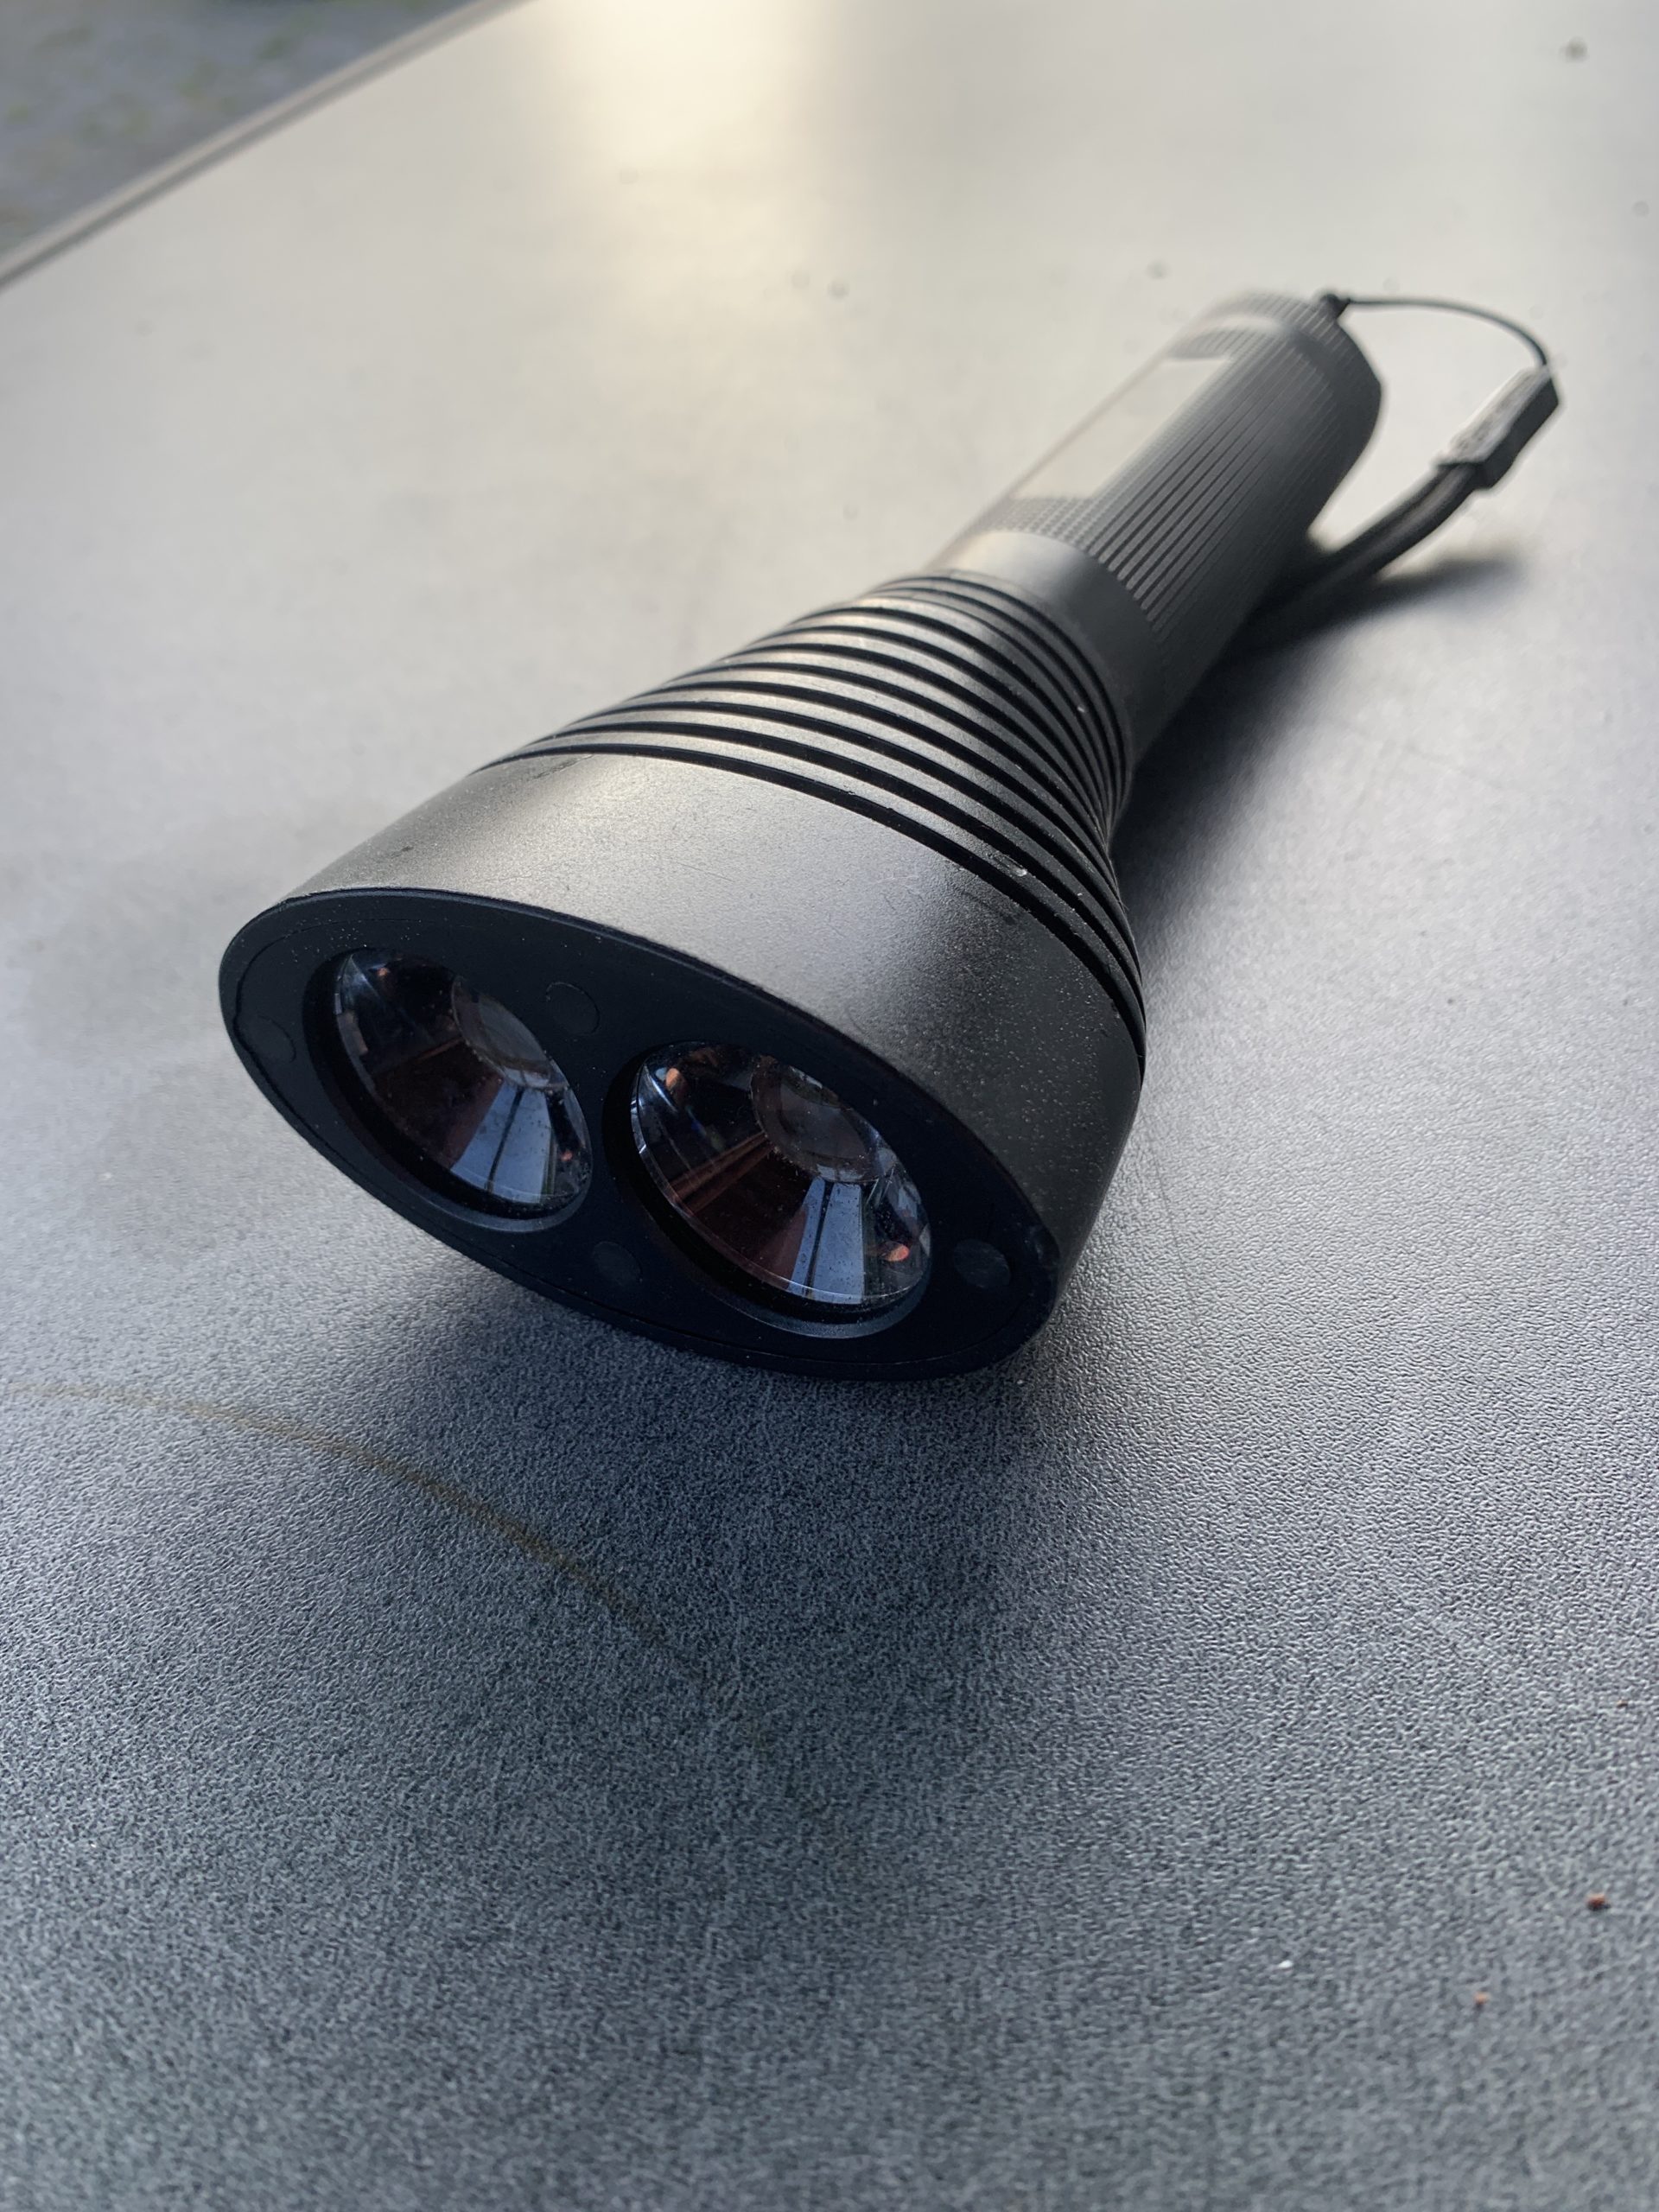 LED Lenser Produkt Test